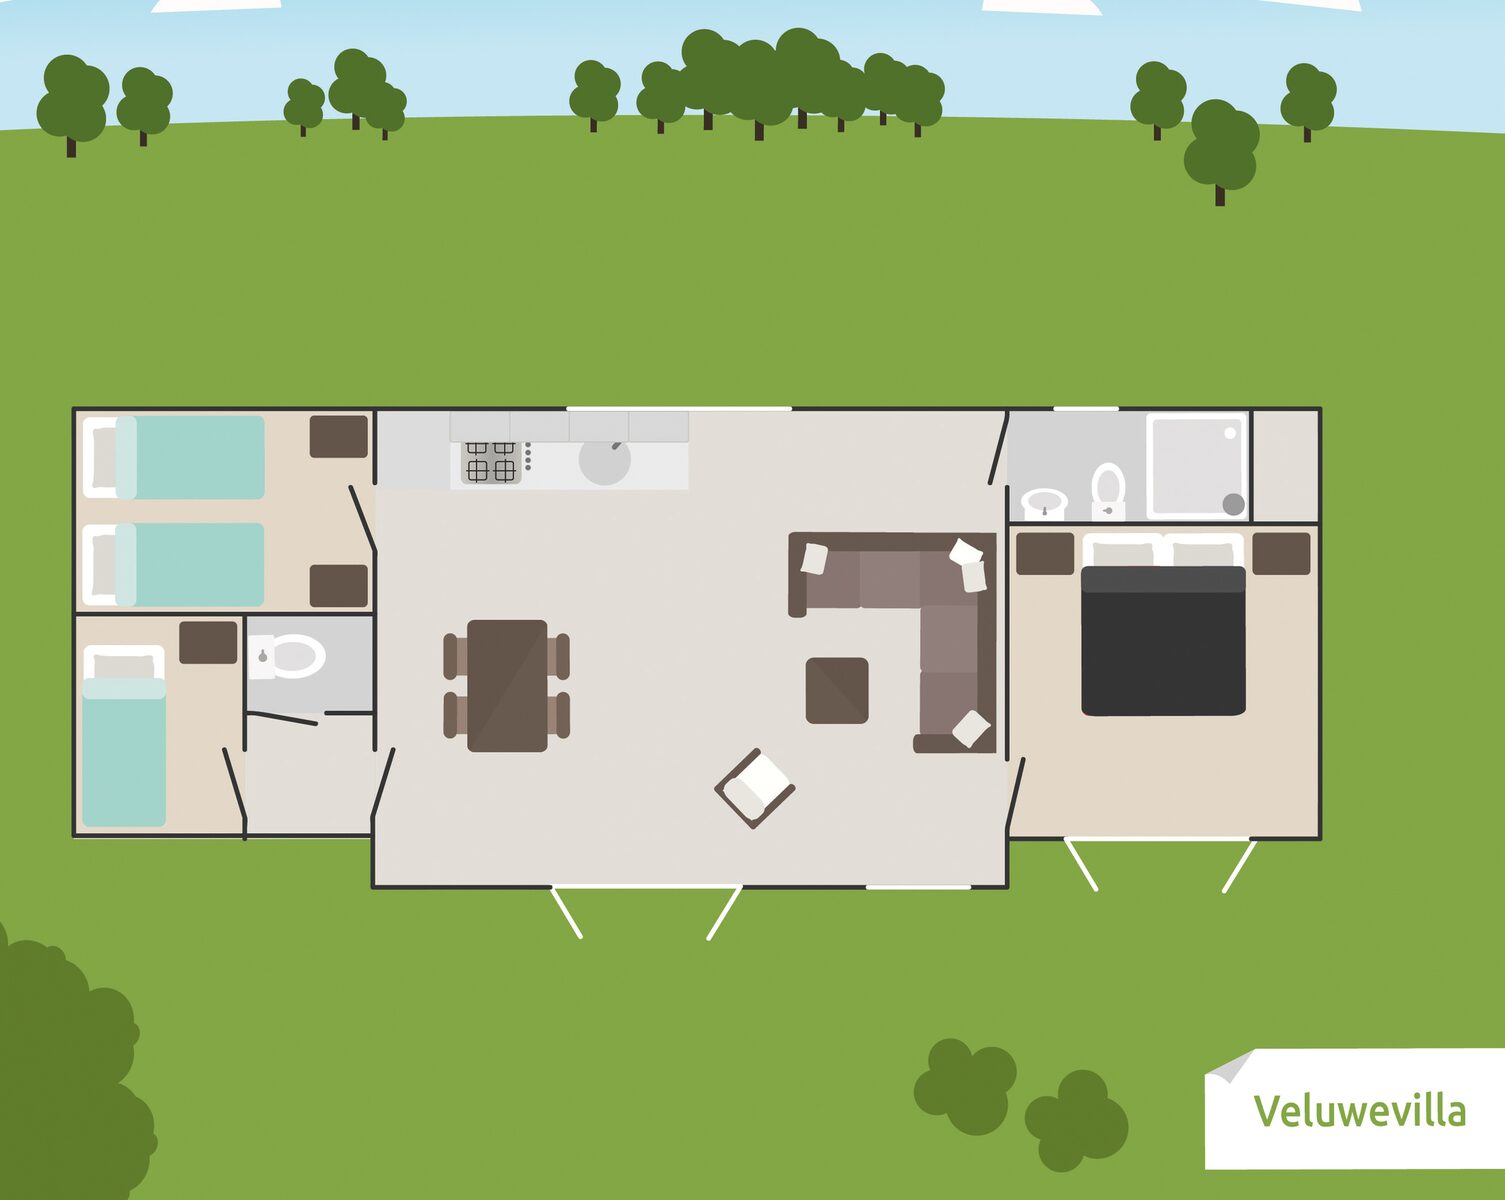 Veluwe-Villa für 6 Personen mitt Grillhause